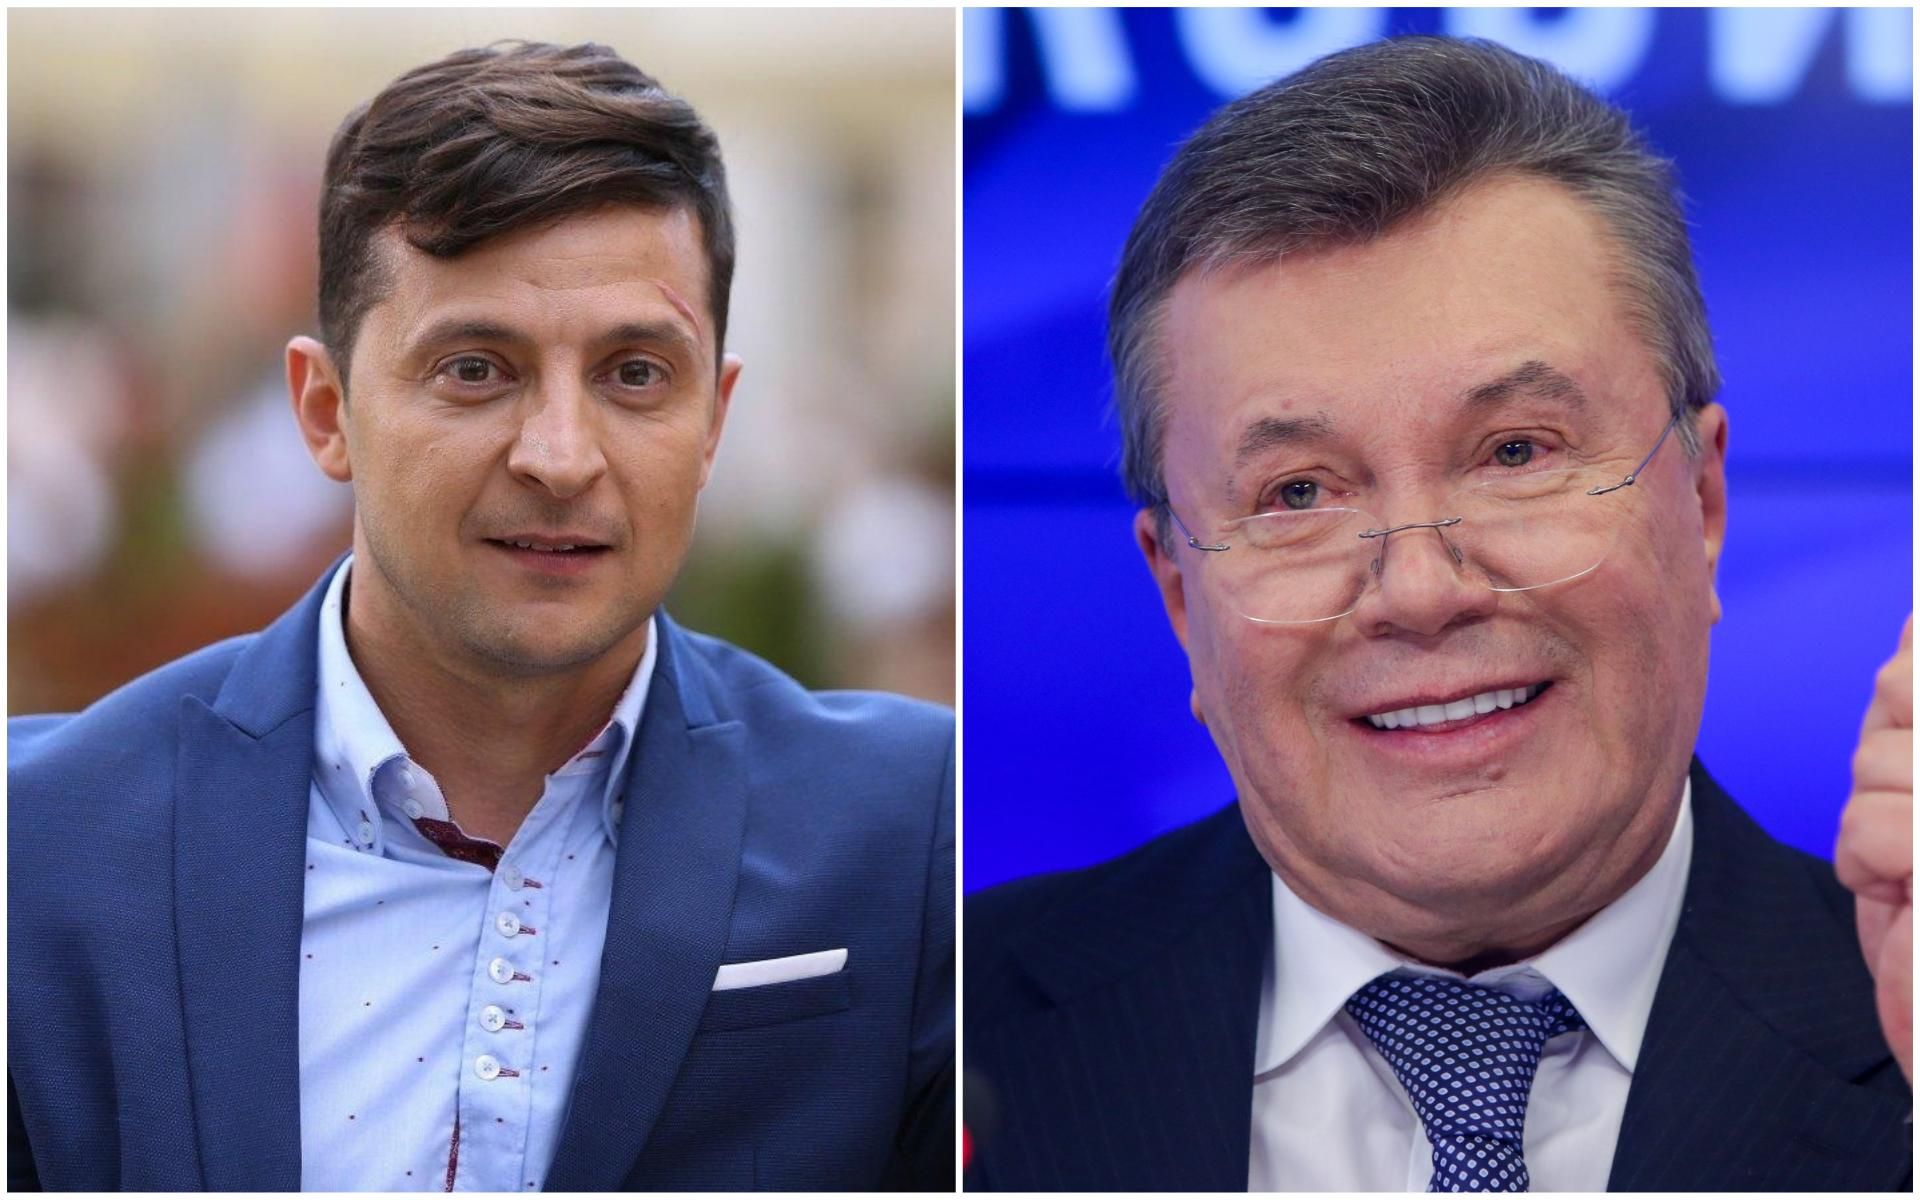 Янукович поздравил Зеленского с победой на выборах: реакция штаба кандидата